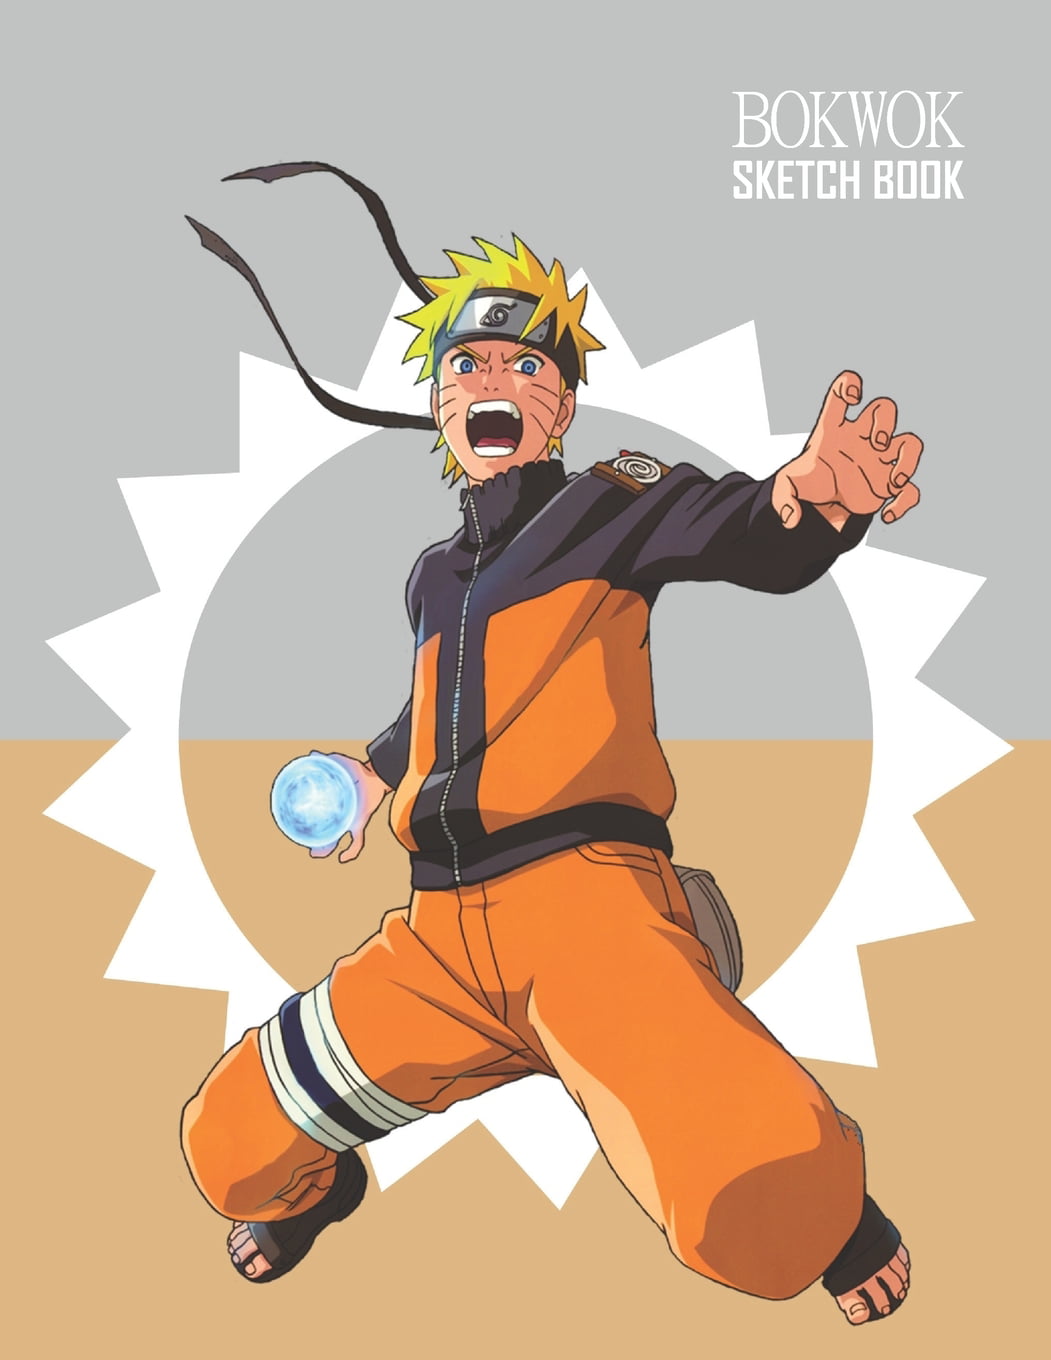 Sketch of Uzumaki Naruto. : r/Naruto